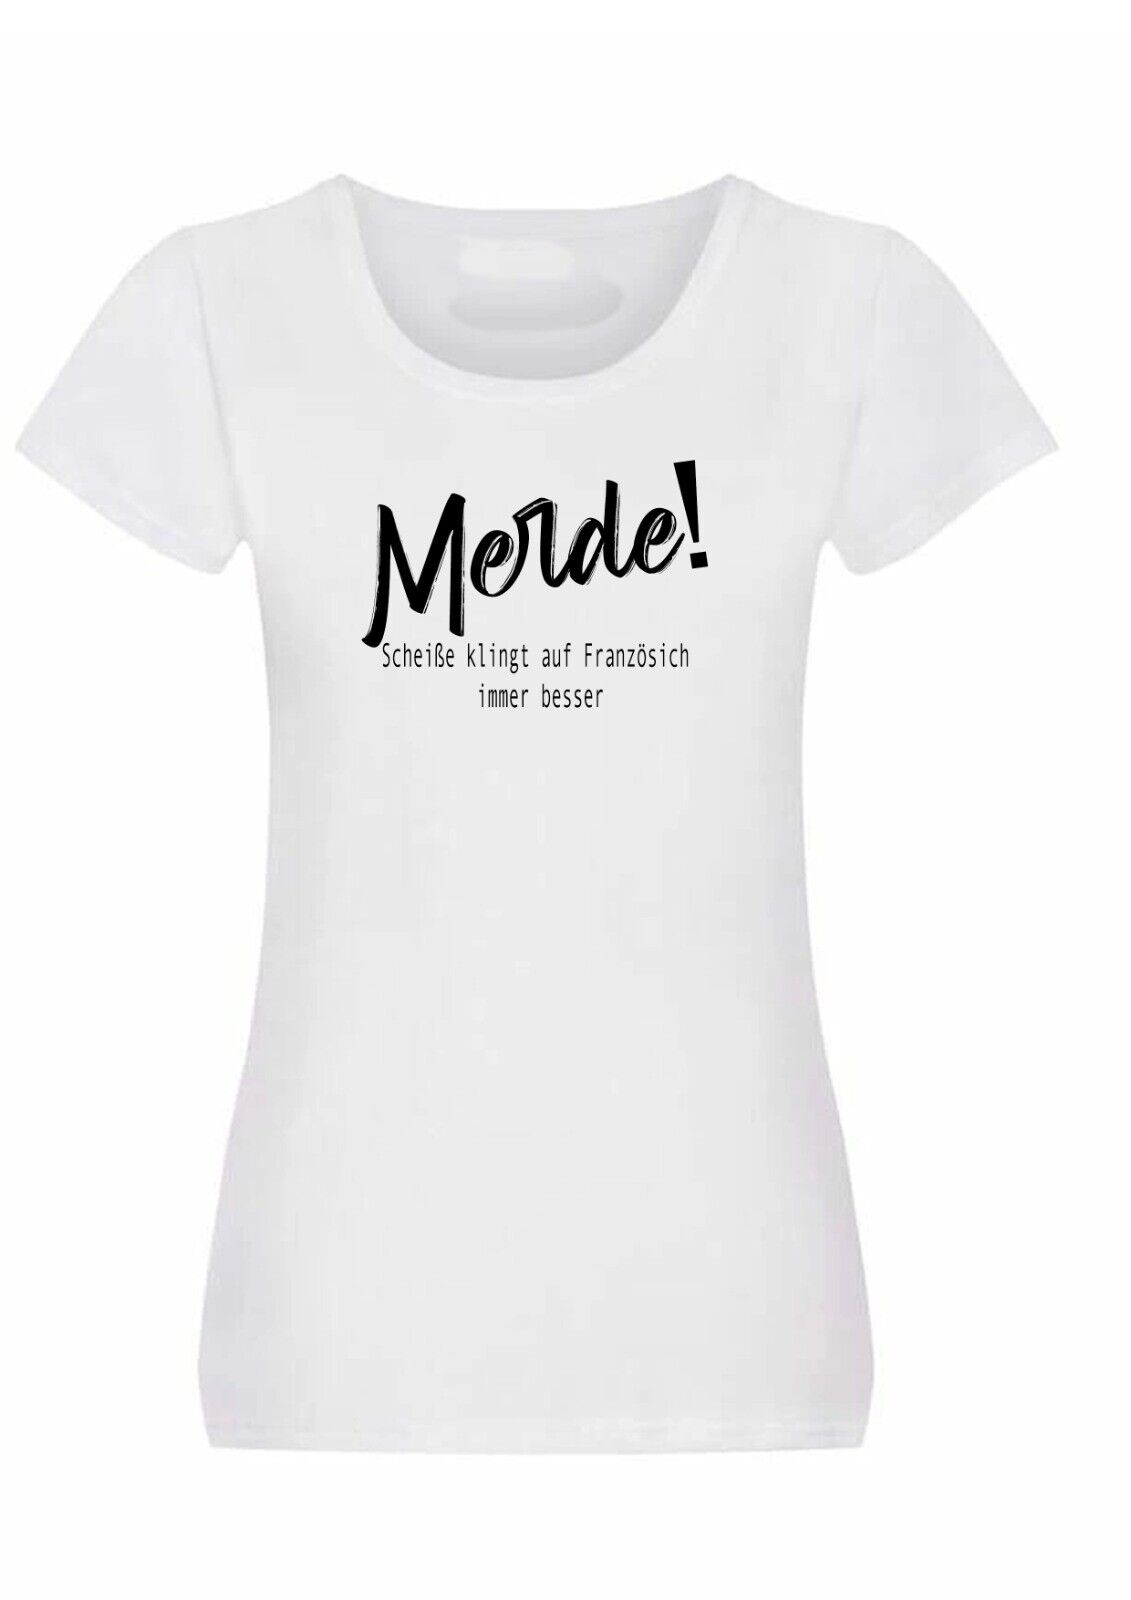 Sprüch T-Shirt LadyFit lustiger Geschenk für alle Anlässe Freunde Kollegen